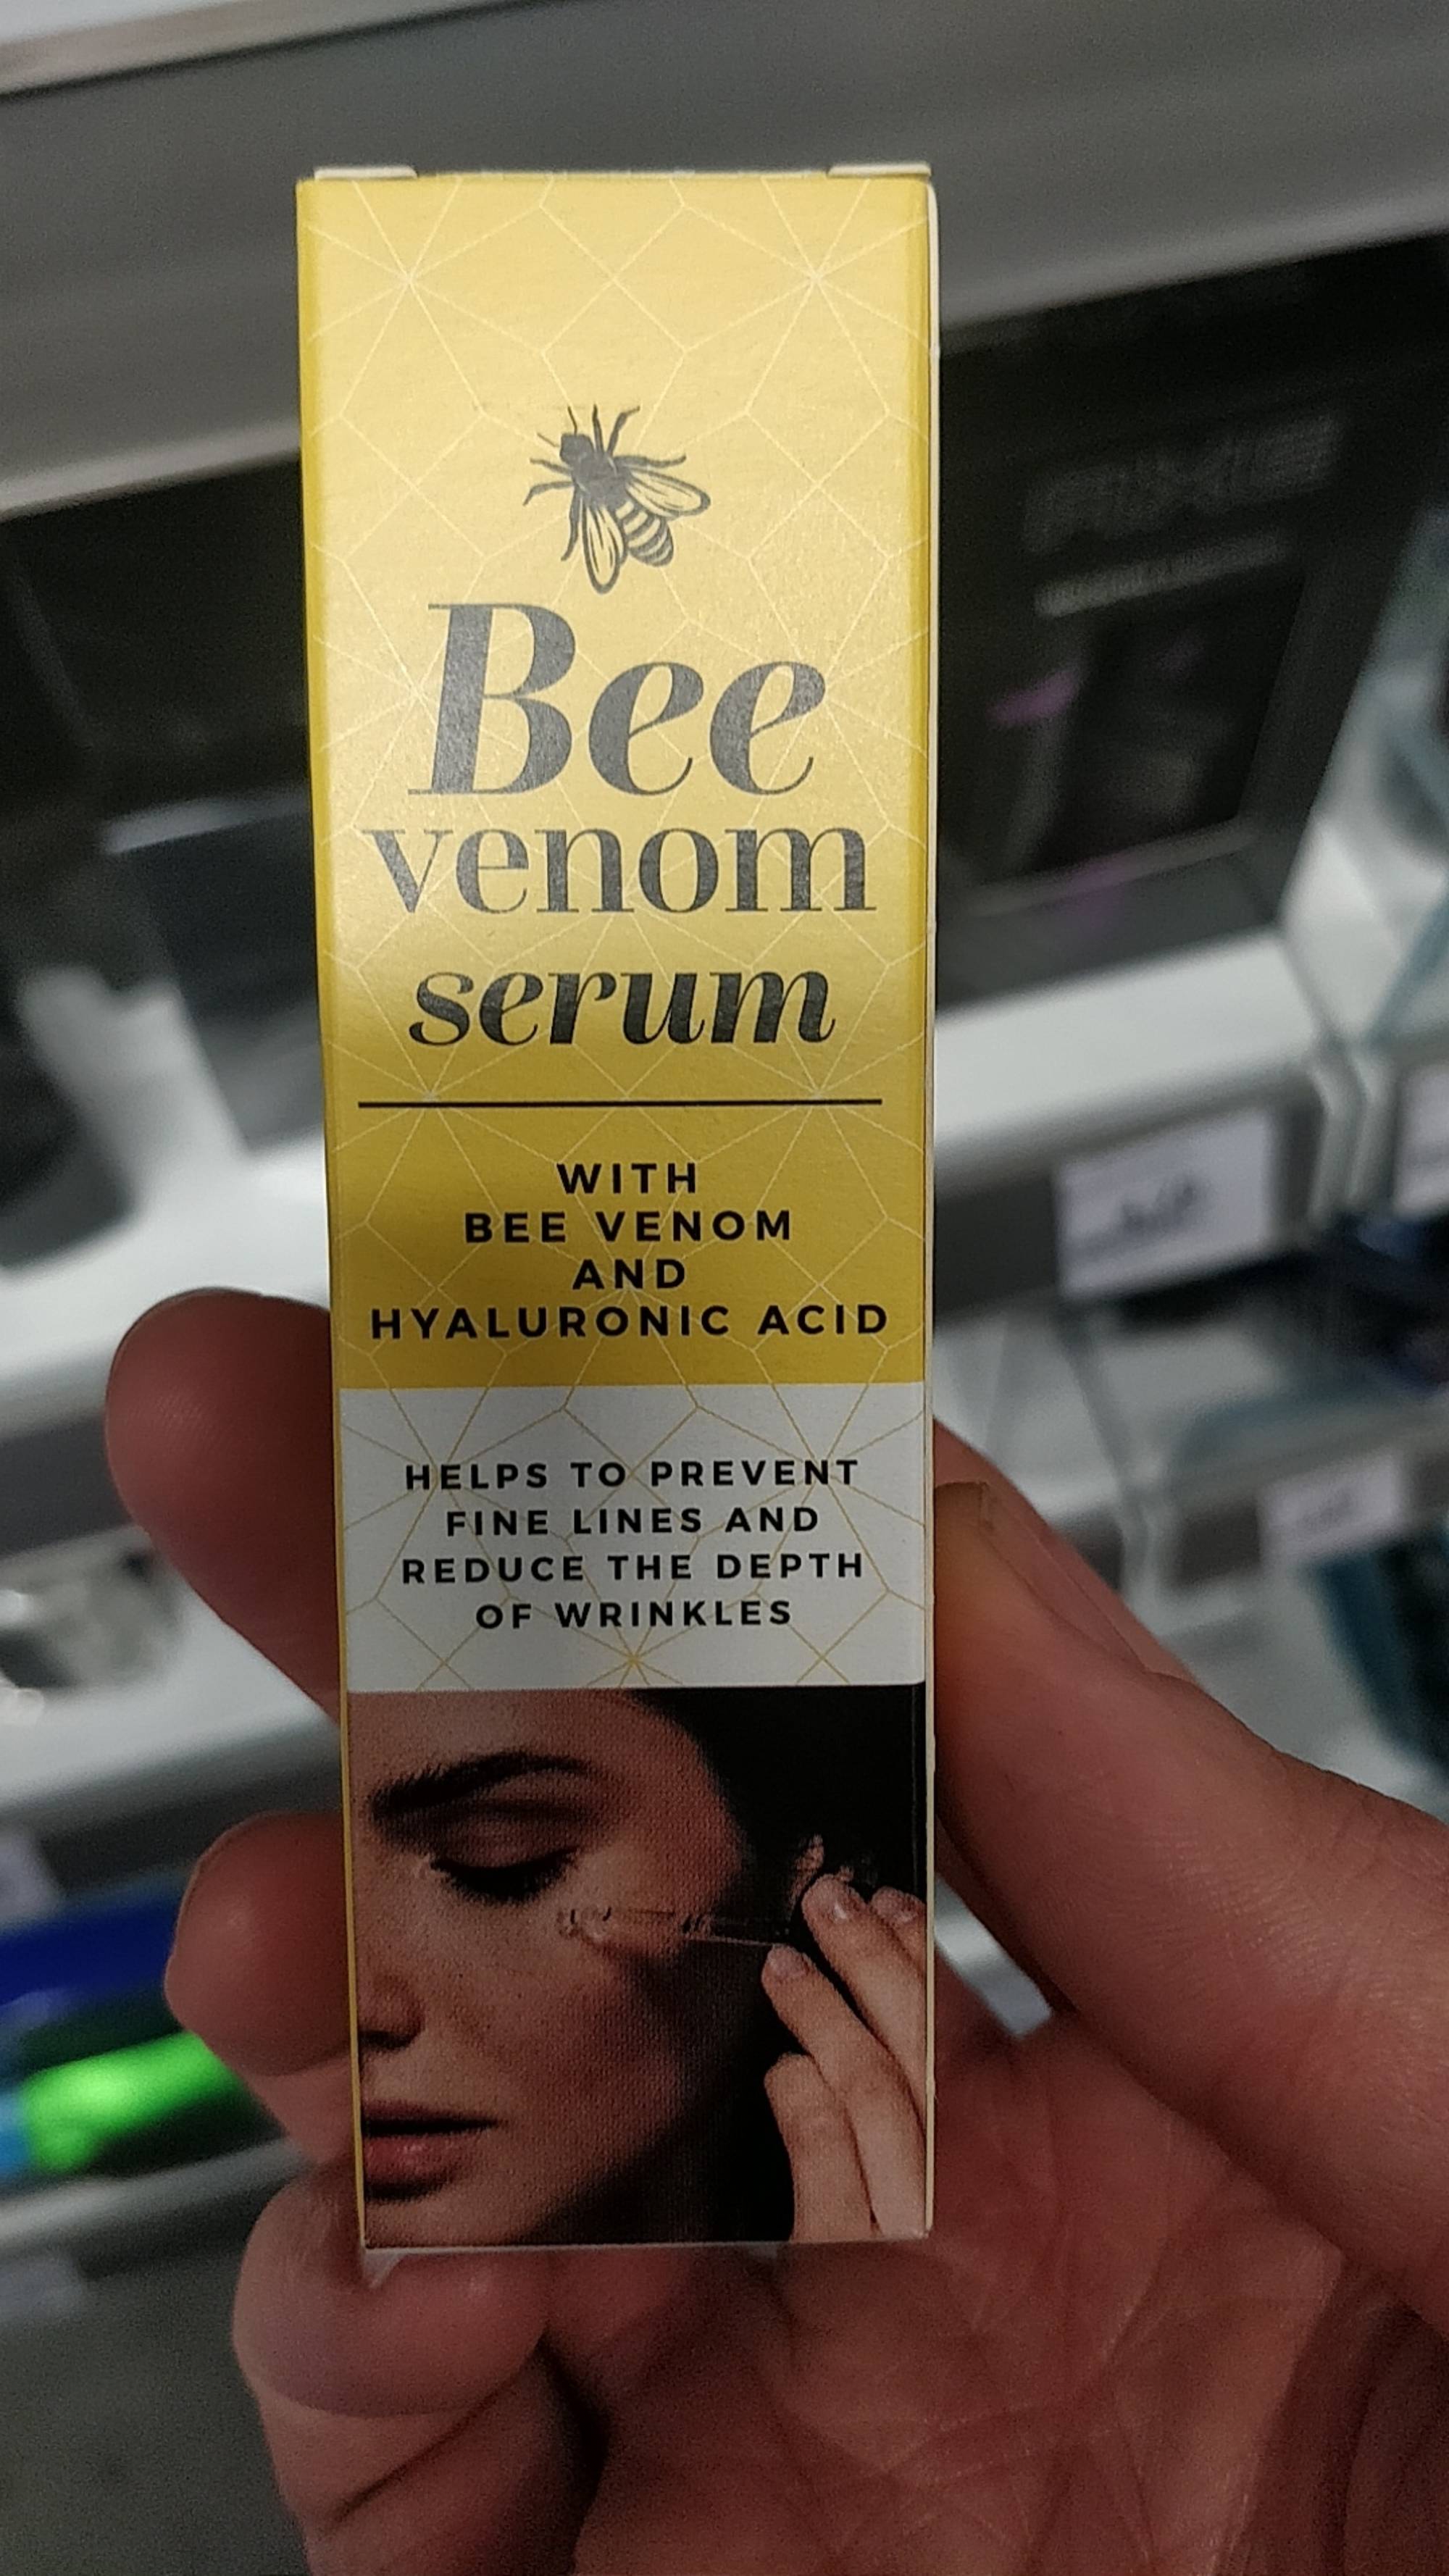 MASCOT EUROPE BV - Bee venom serum